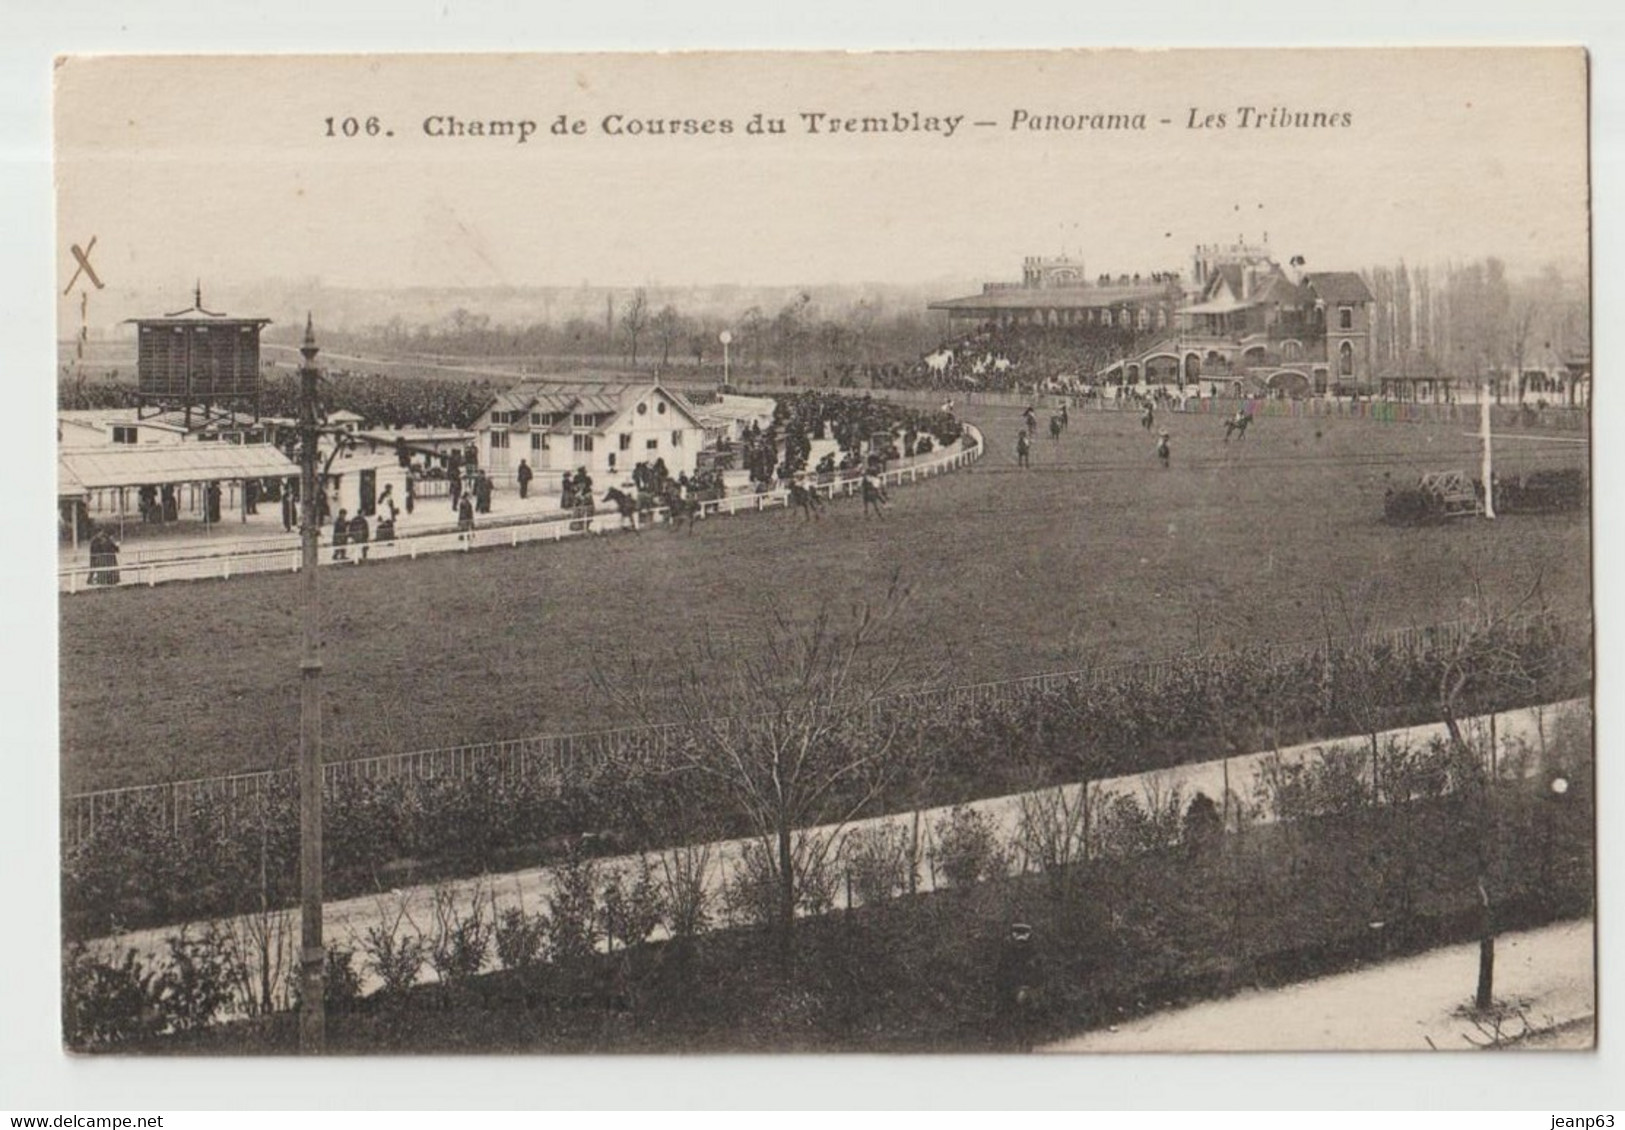 106. Champ De Courses Du Tremblay - Panorama - Les Tribunes - Tremblay En France